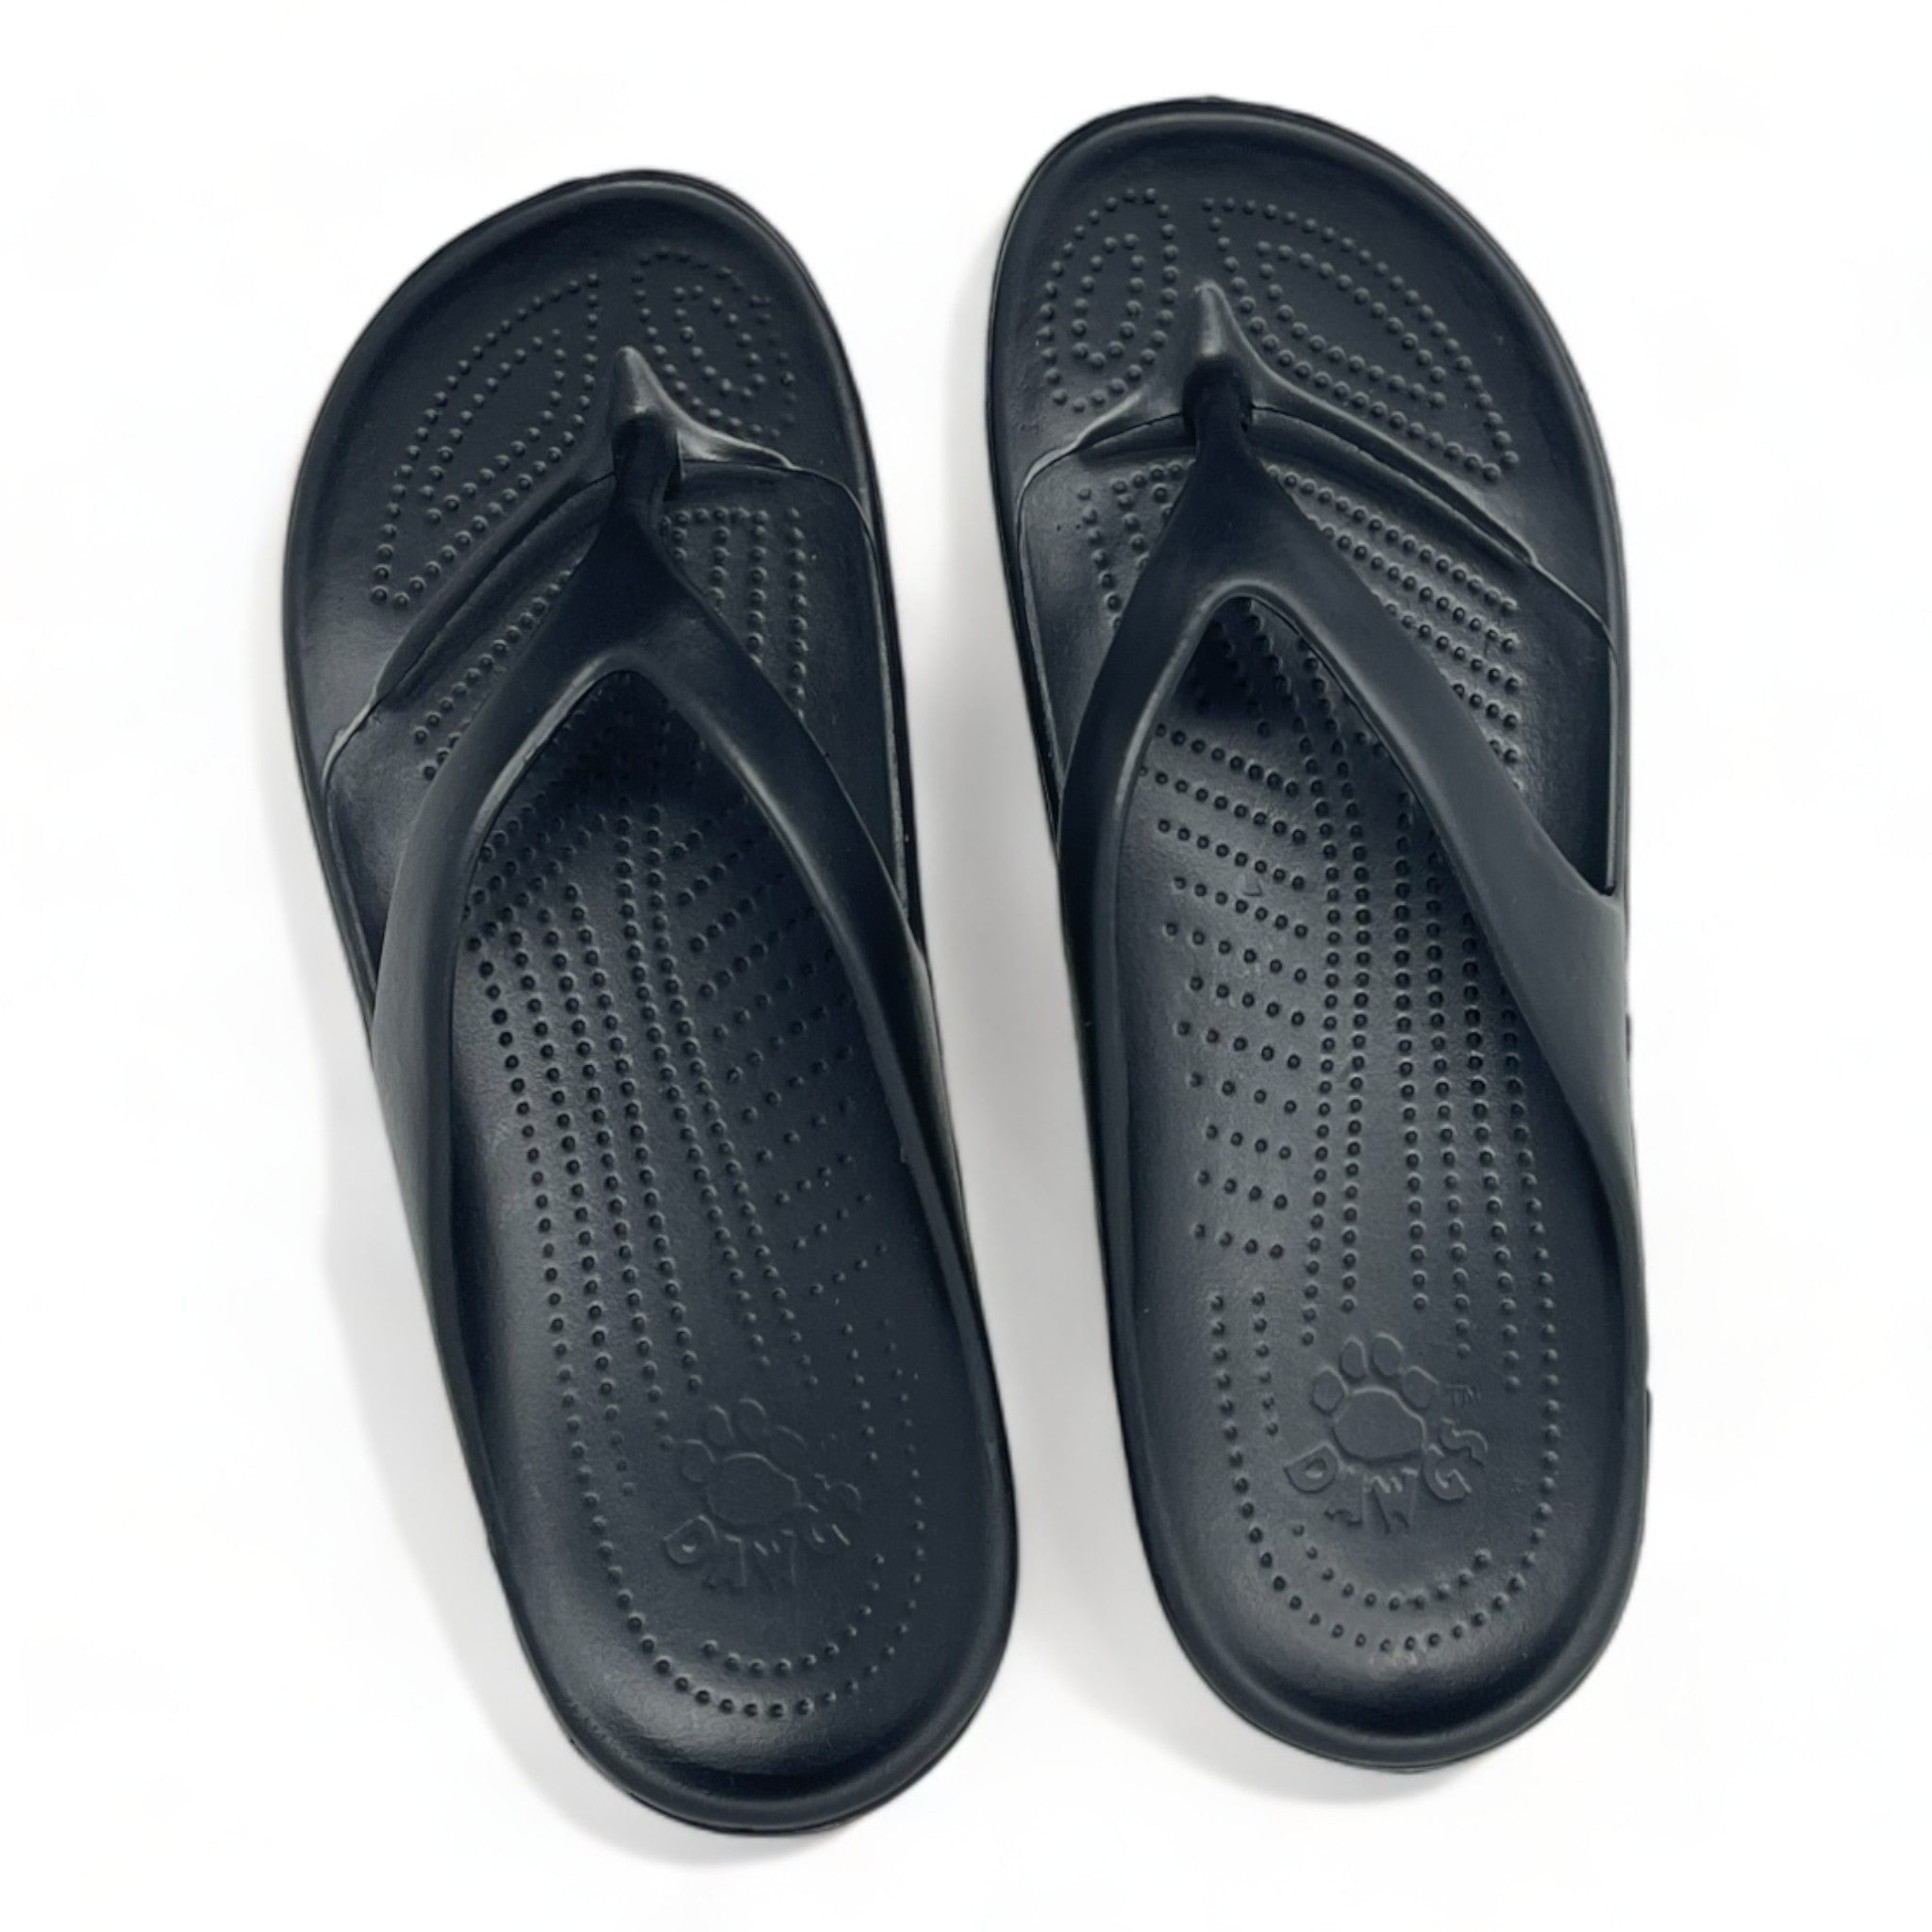 Men's Flip Flops - Black